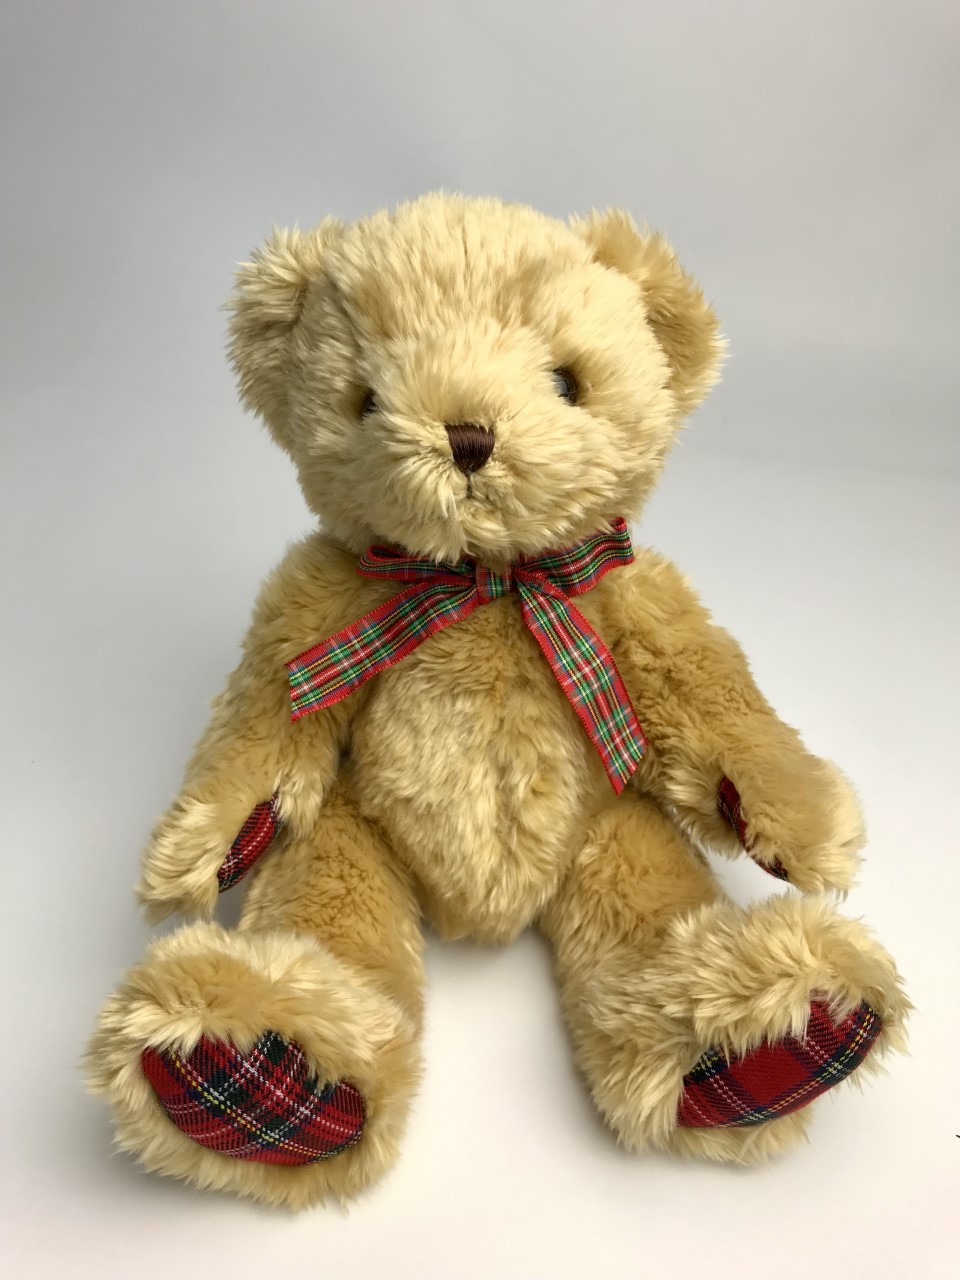 Tartan Teddy Bear | A Scottish Teddy Gift | Send a Cuddly bear today!